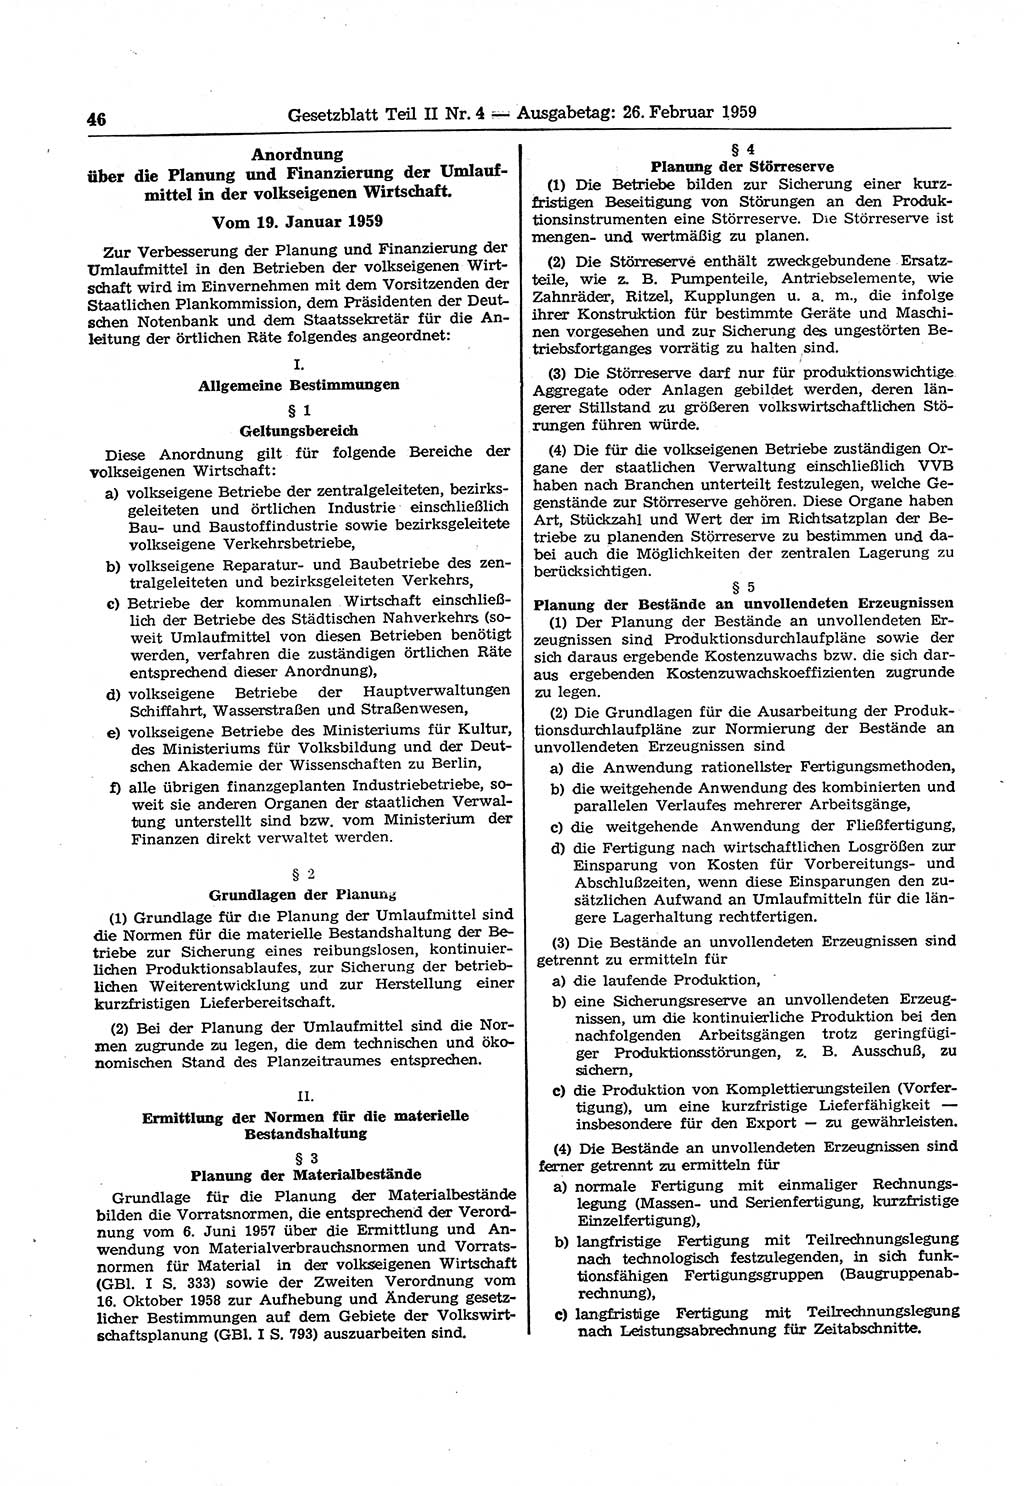 Gesetzblatt (GBl.) der Deutschen Demokratischen Republik (DDR) Teil ⅠⅠ 1959, Seite 46 (GBl. DDR ⅠⅠ 1959, S. 46)